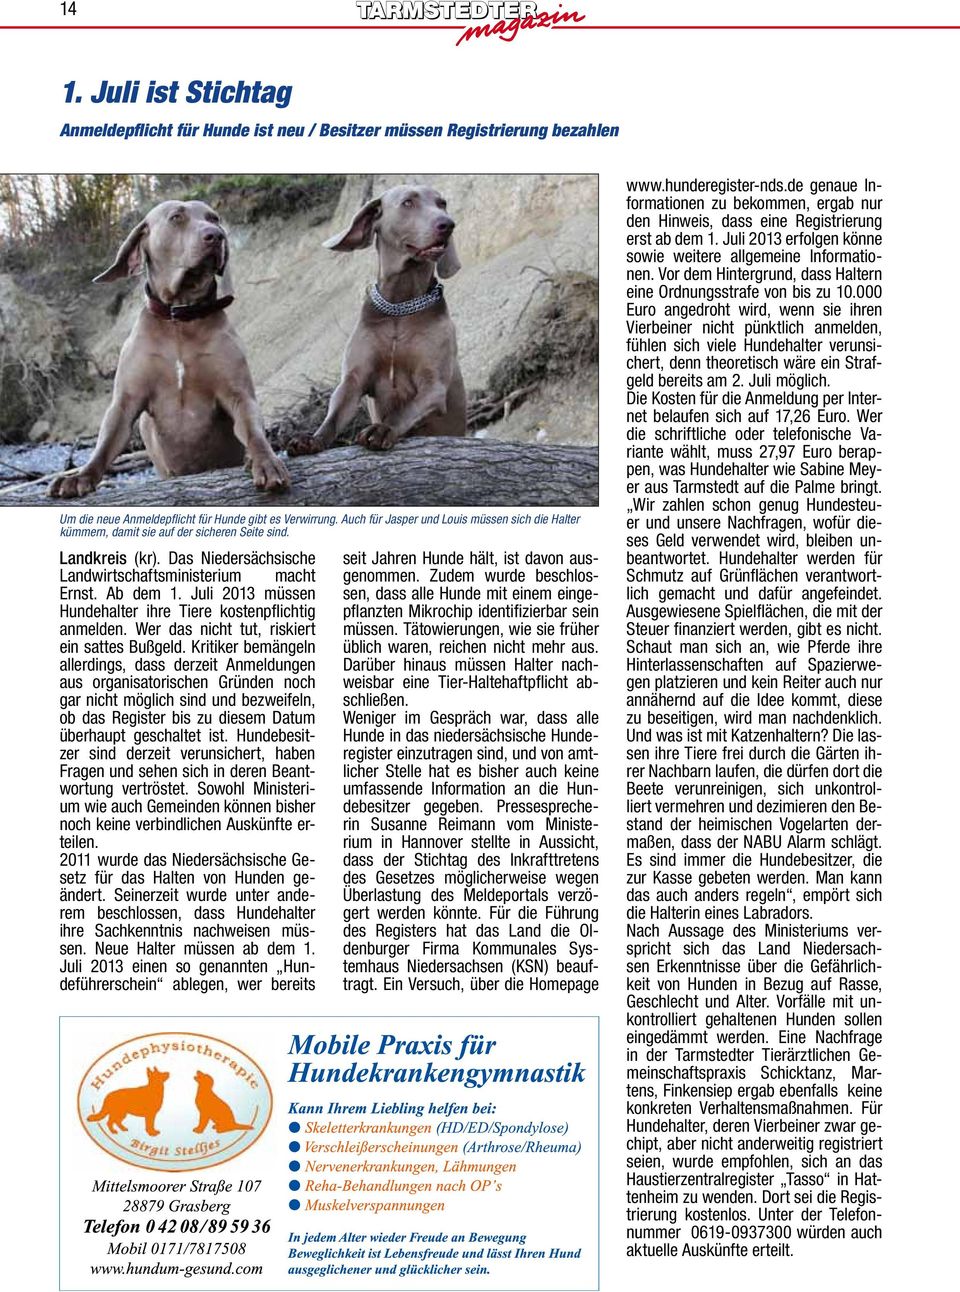 Juli 2013 müssen Hundehalter ihre Tiere kostenpflichtig anmelden. Wer das nicht tut, riskiert ein sattes Bußgeld.